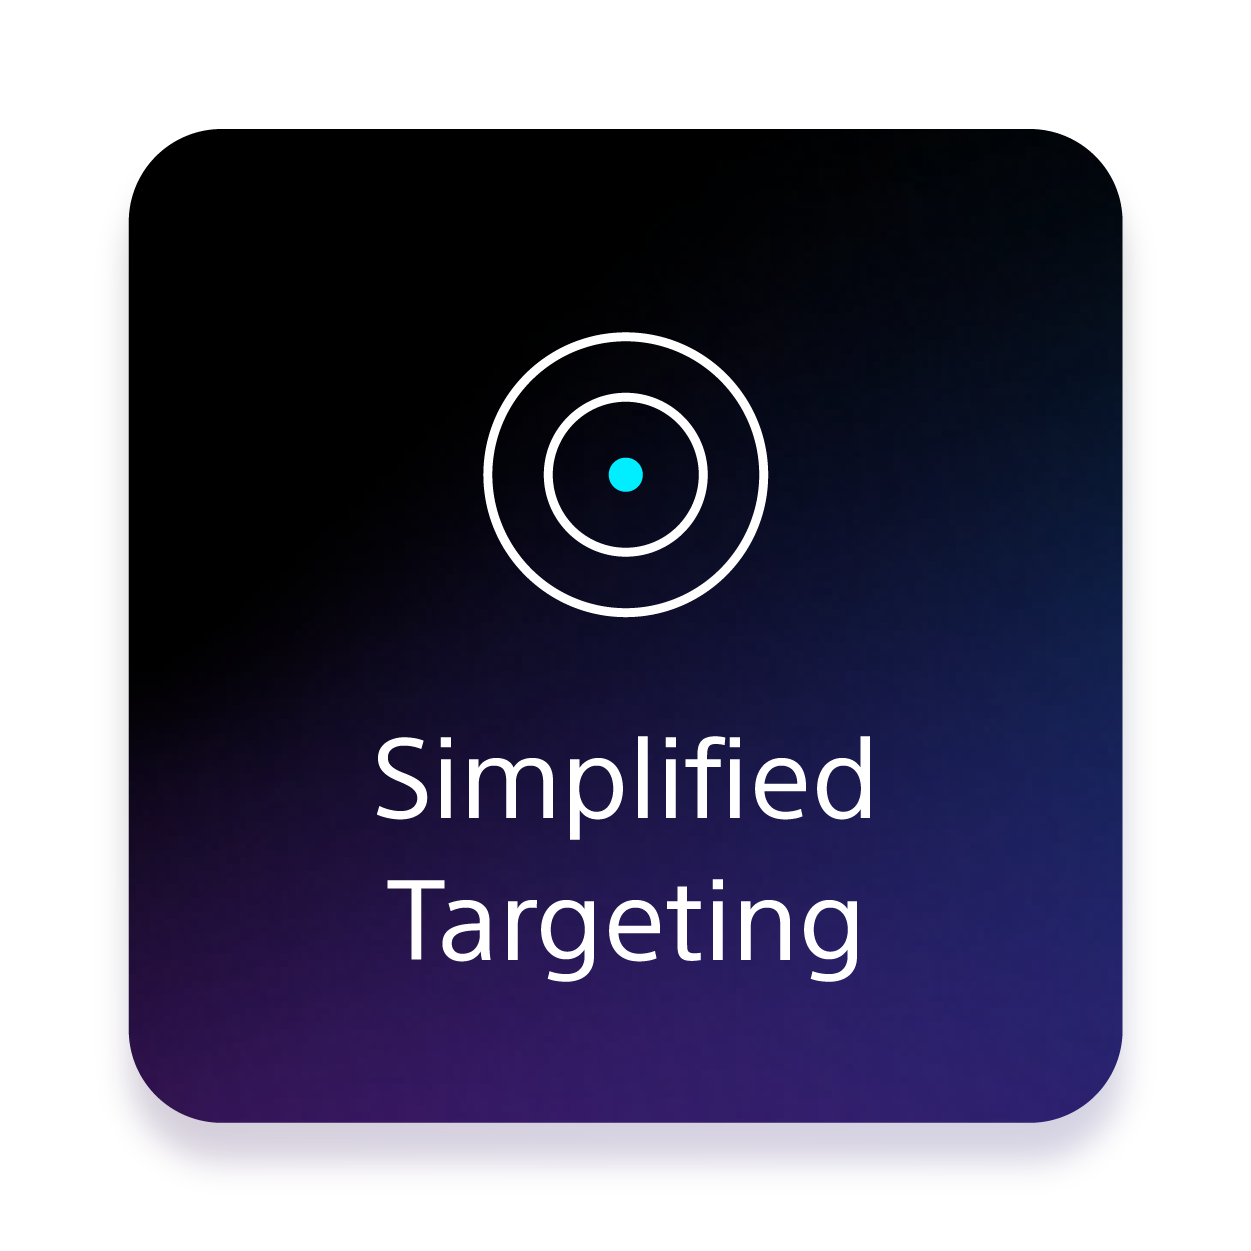 Simplified Targeting